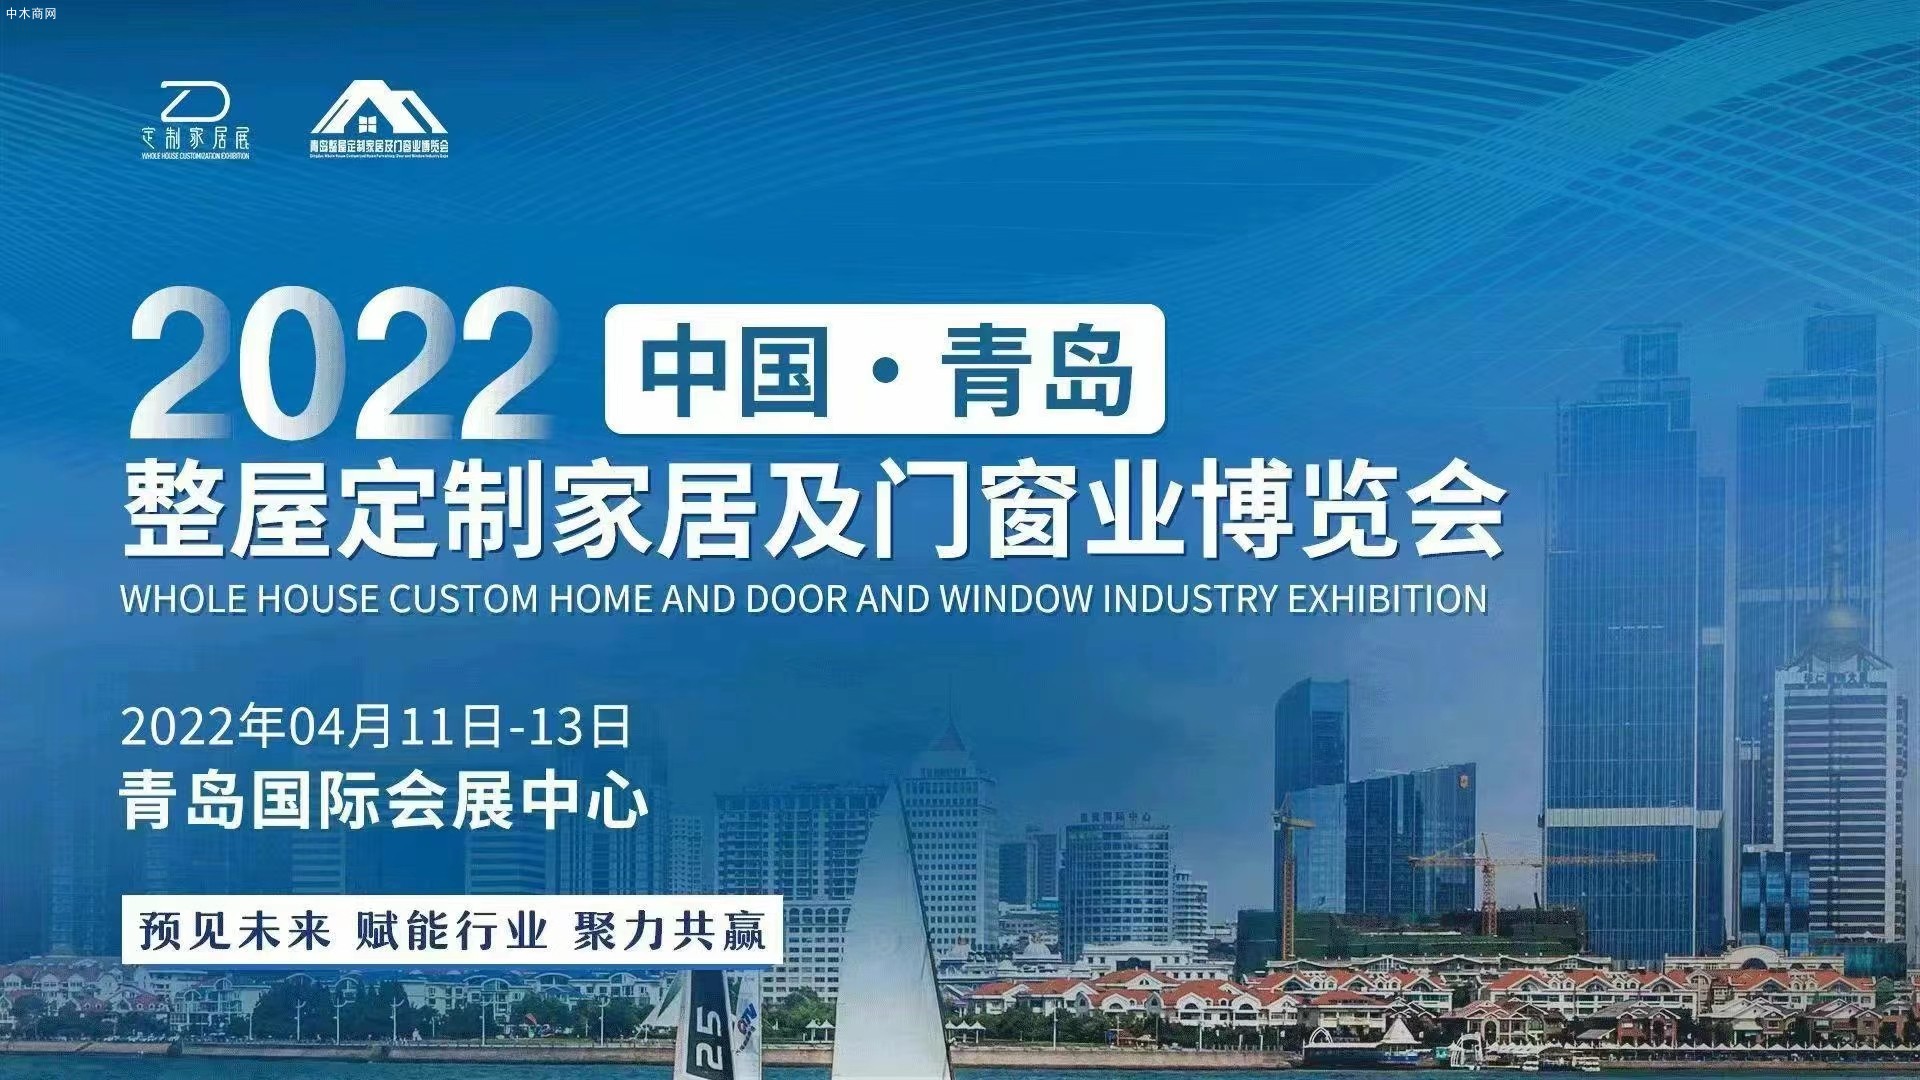 2022中国青岛整屋定制家居及门窗业博览会